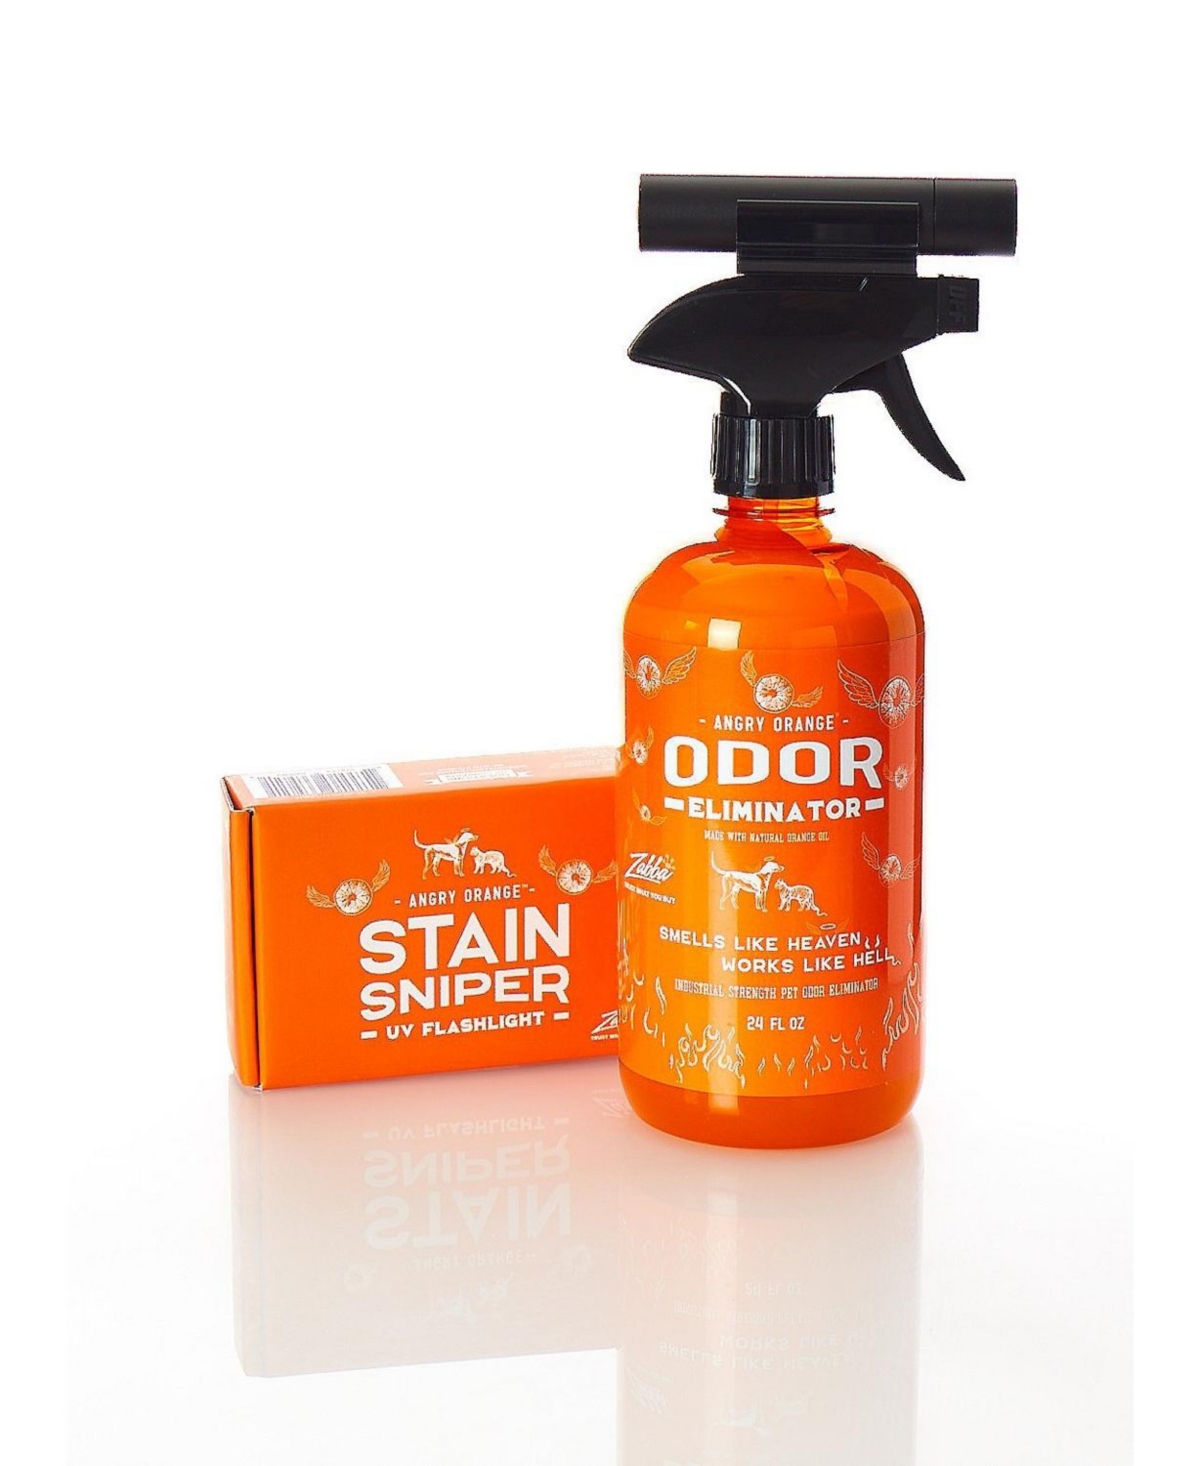 24 oz Pet Odor Eliminator and Stain Sniper Bundle - Orange